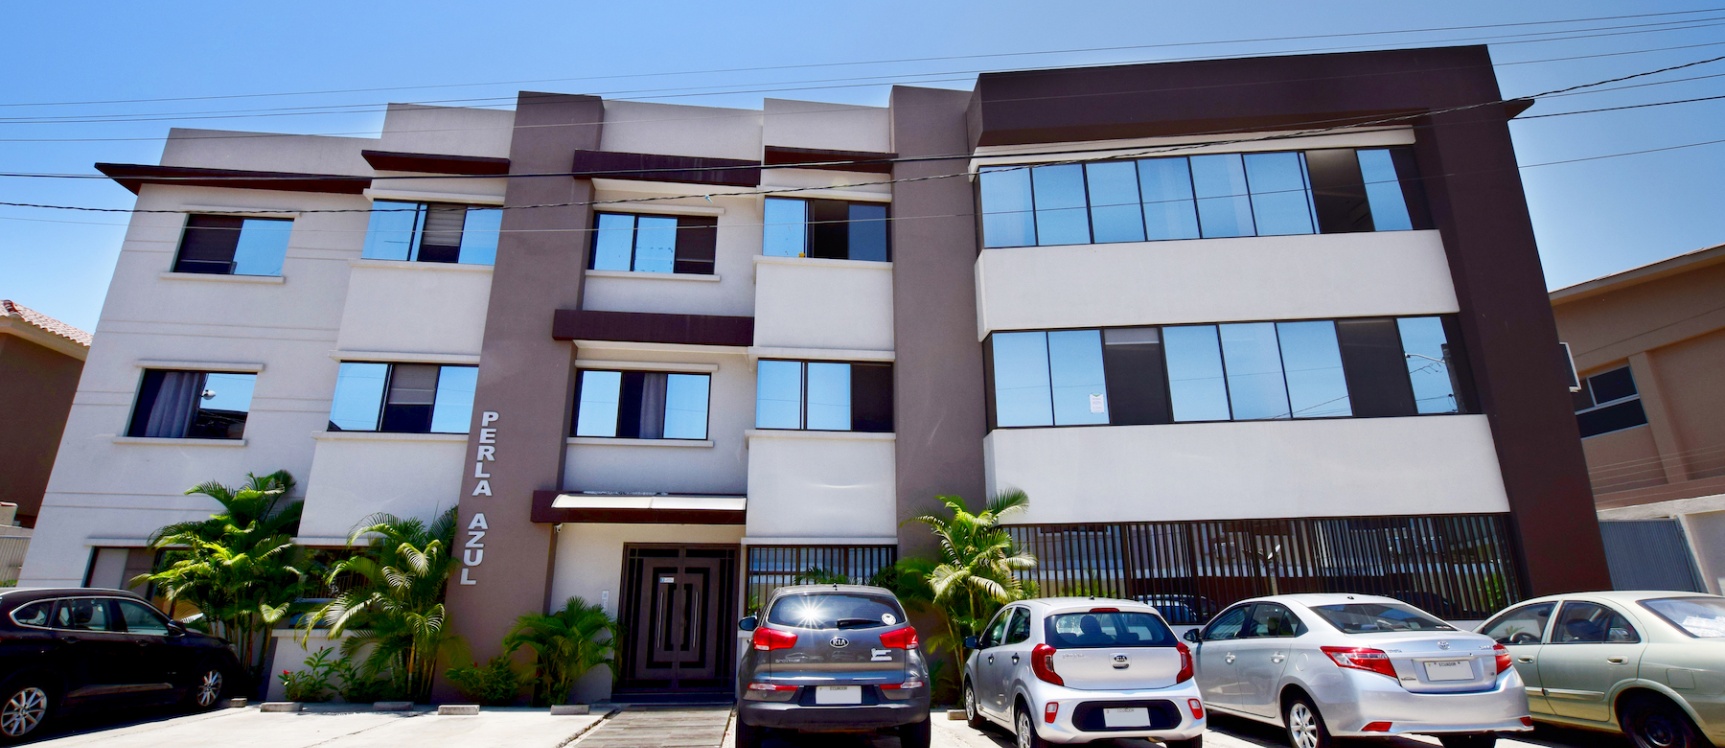 GeoBienes - Departamento en venta ubicado en Puerto Azul, Vía a la Costa - Guayaquil - Plusvalia Guayaquil Casas de venta y alquiler Inmobiliaria Ecuador